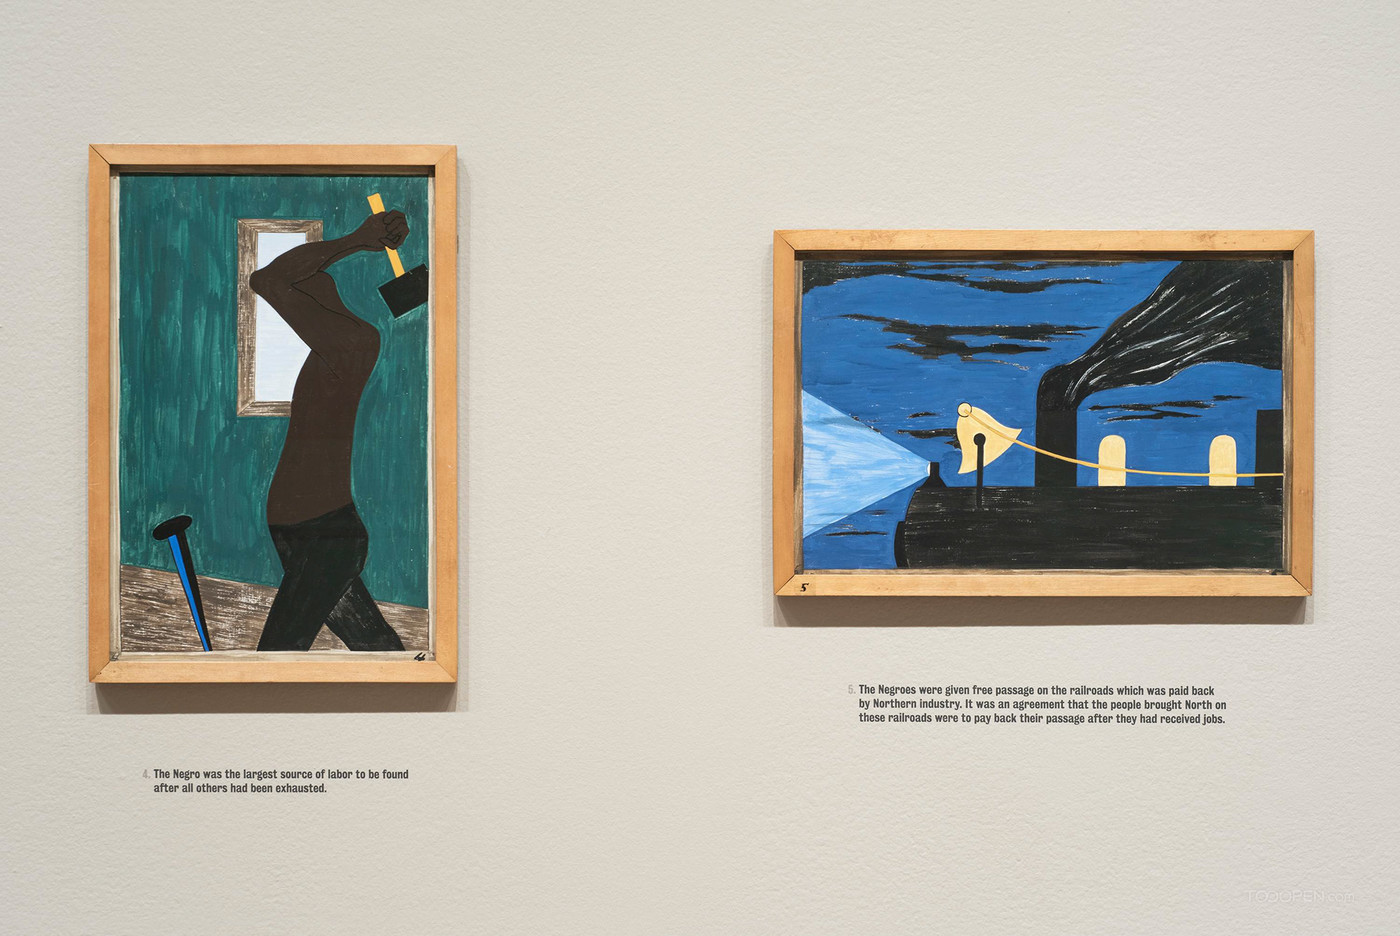 雅各布·劳伦斯《移民系列》画展展示设计图片-06